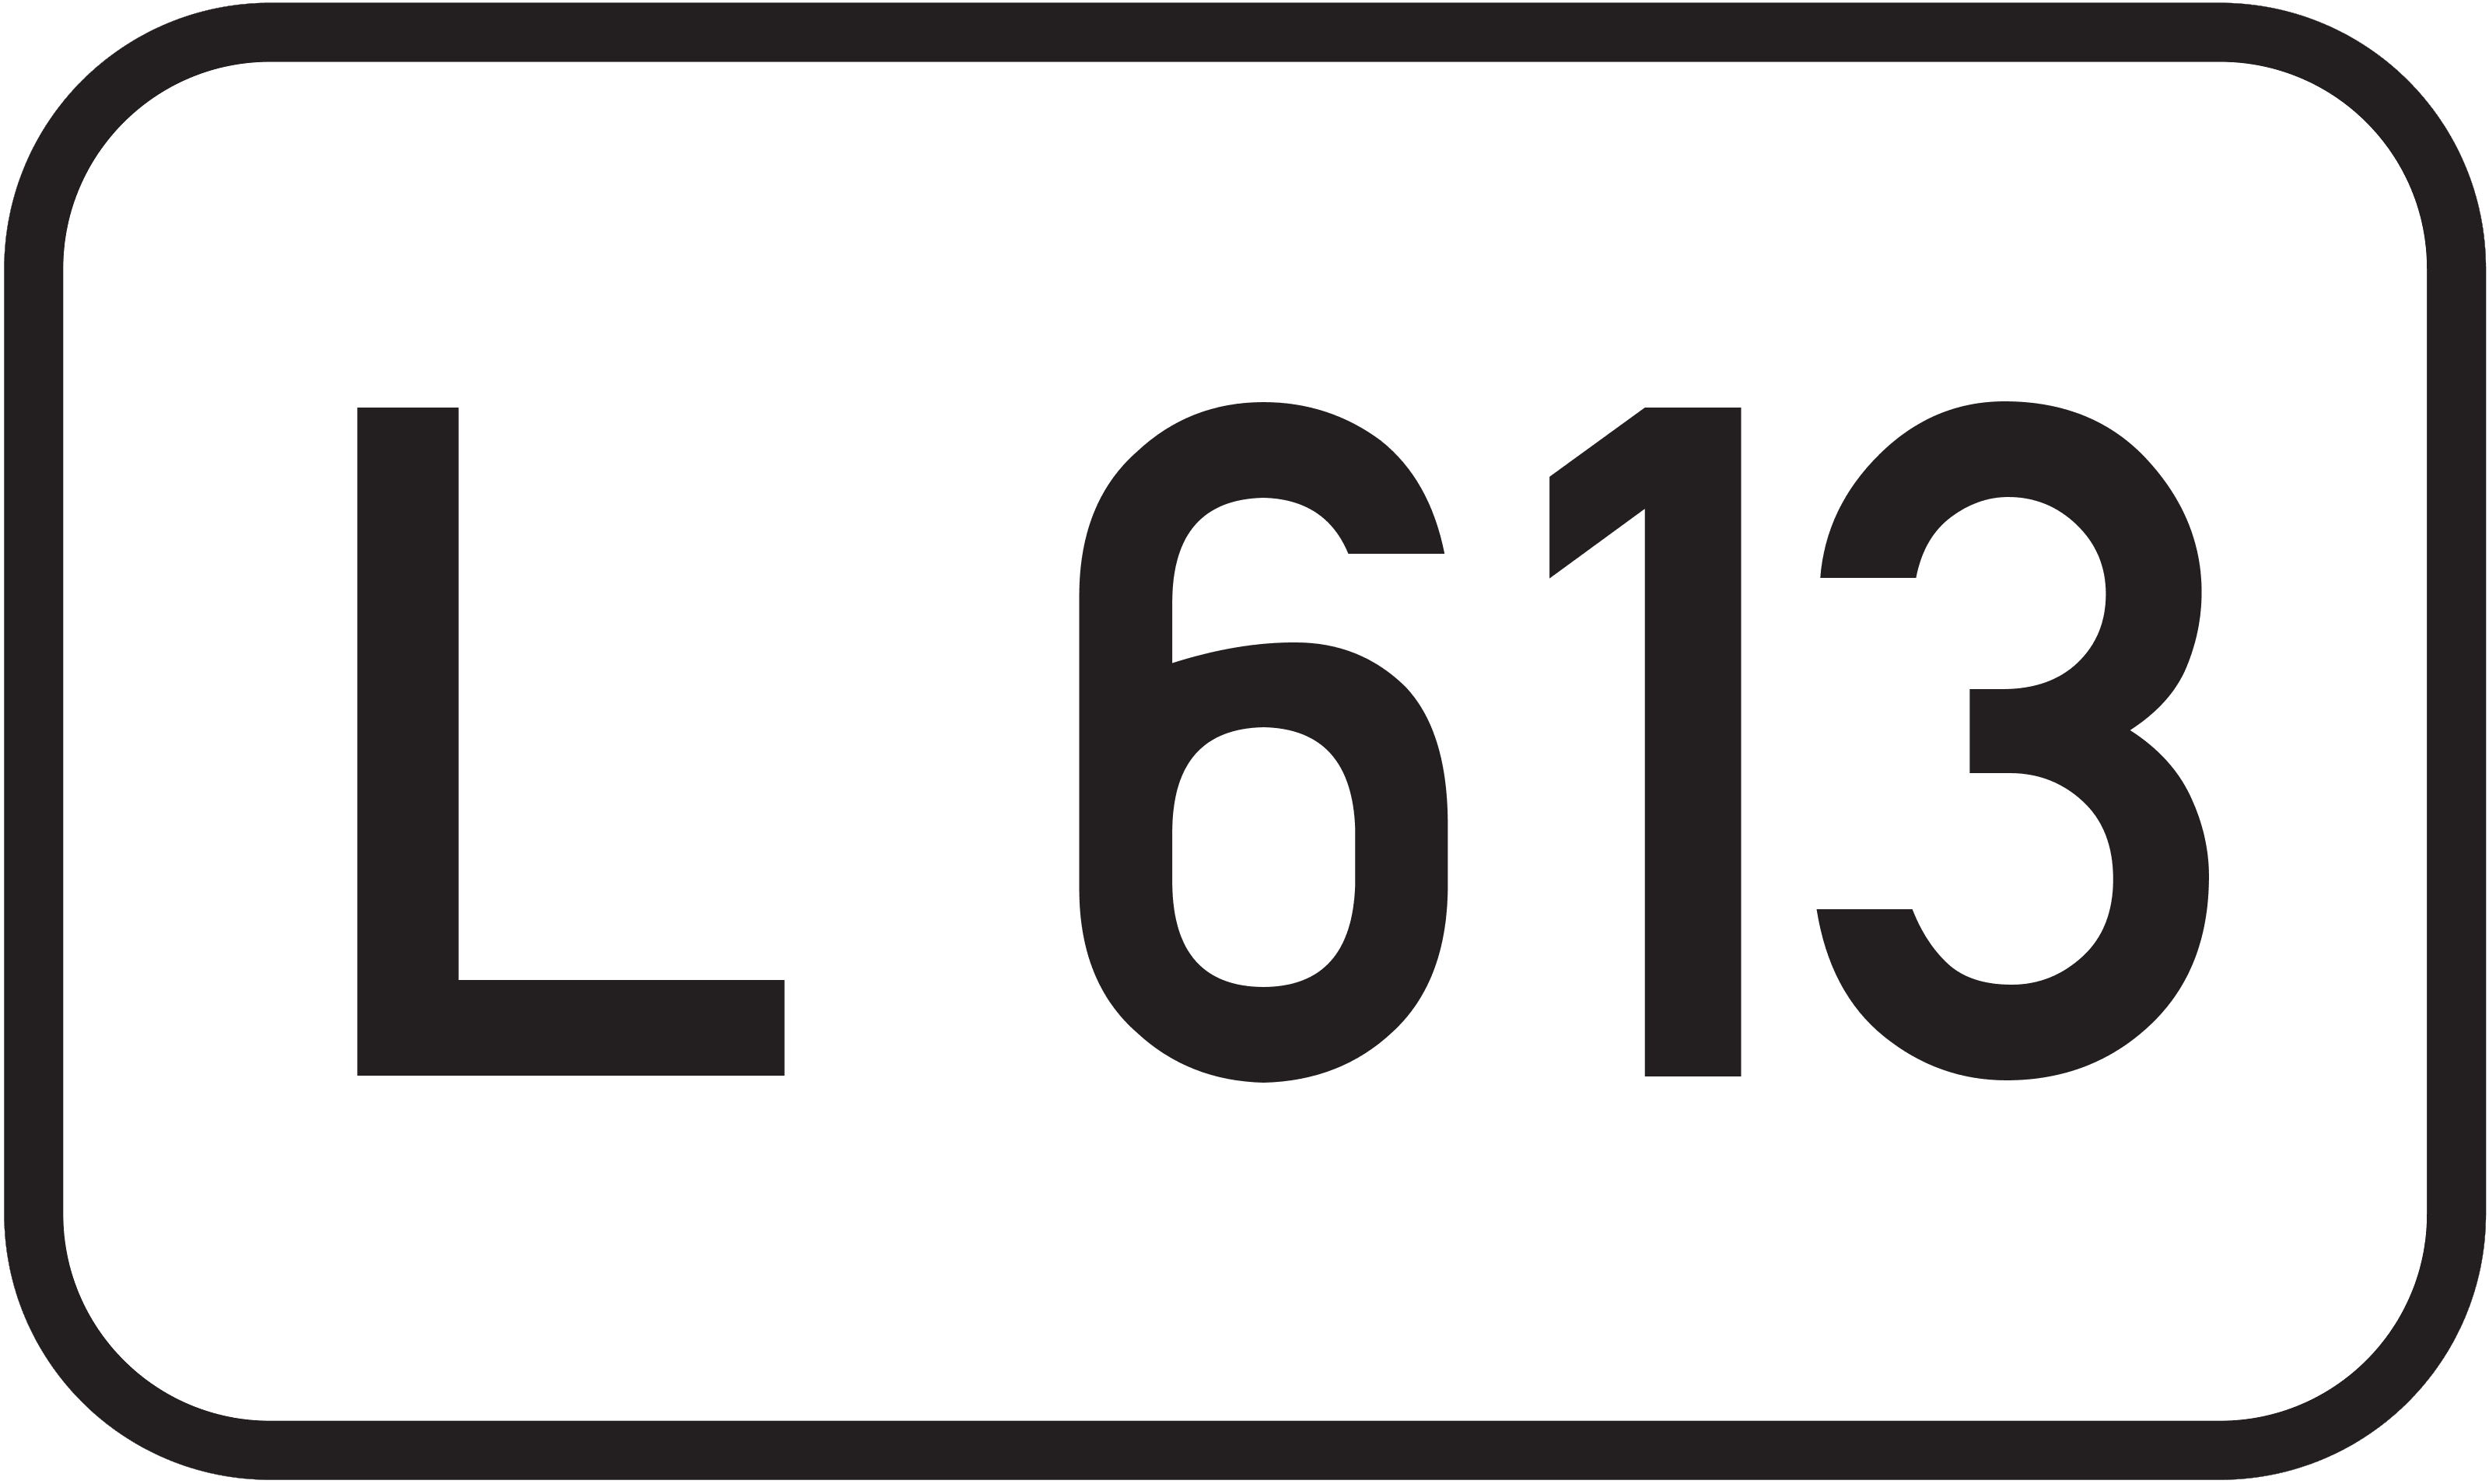 Landesstraße L 613